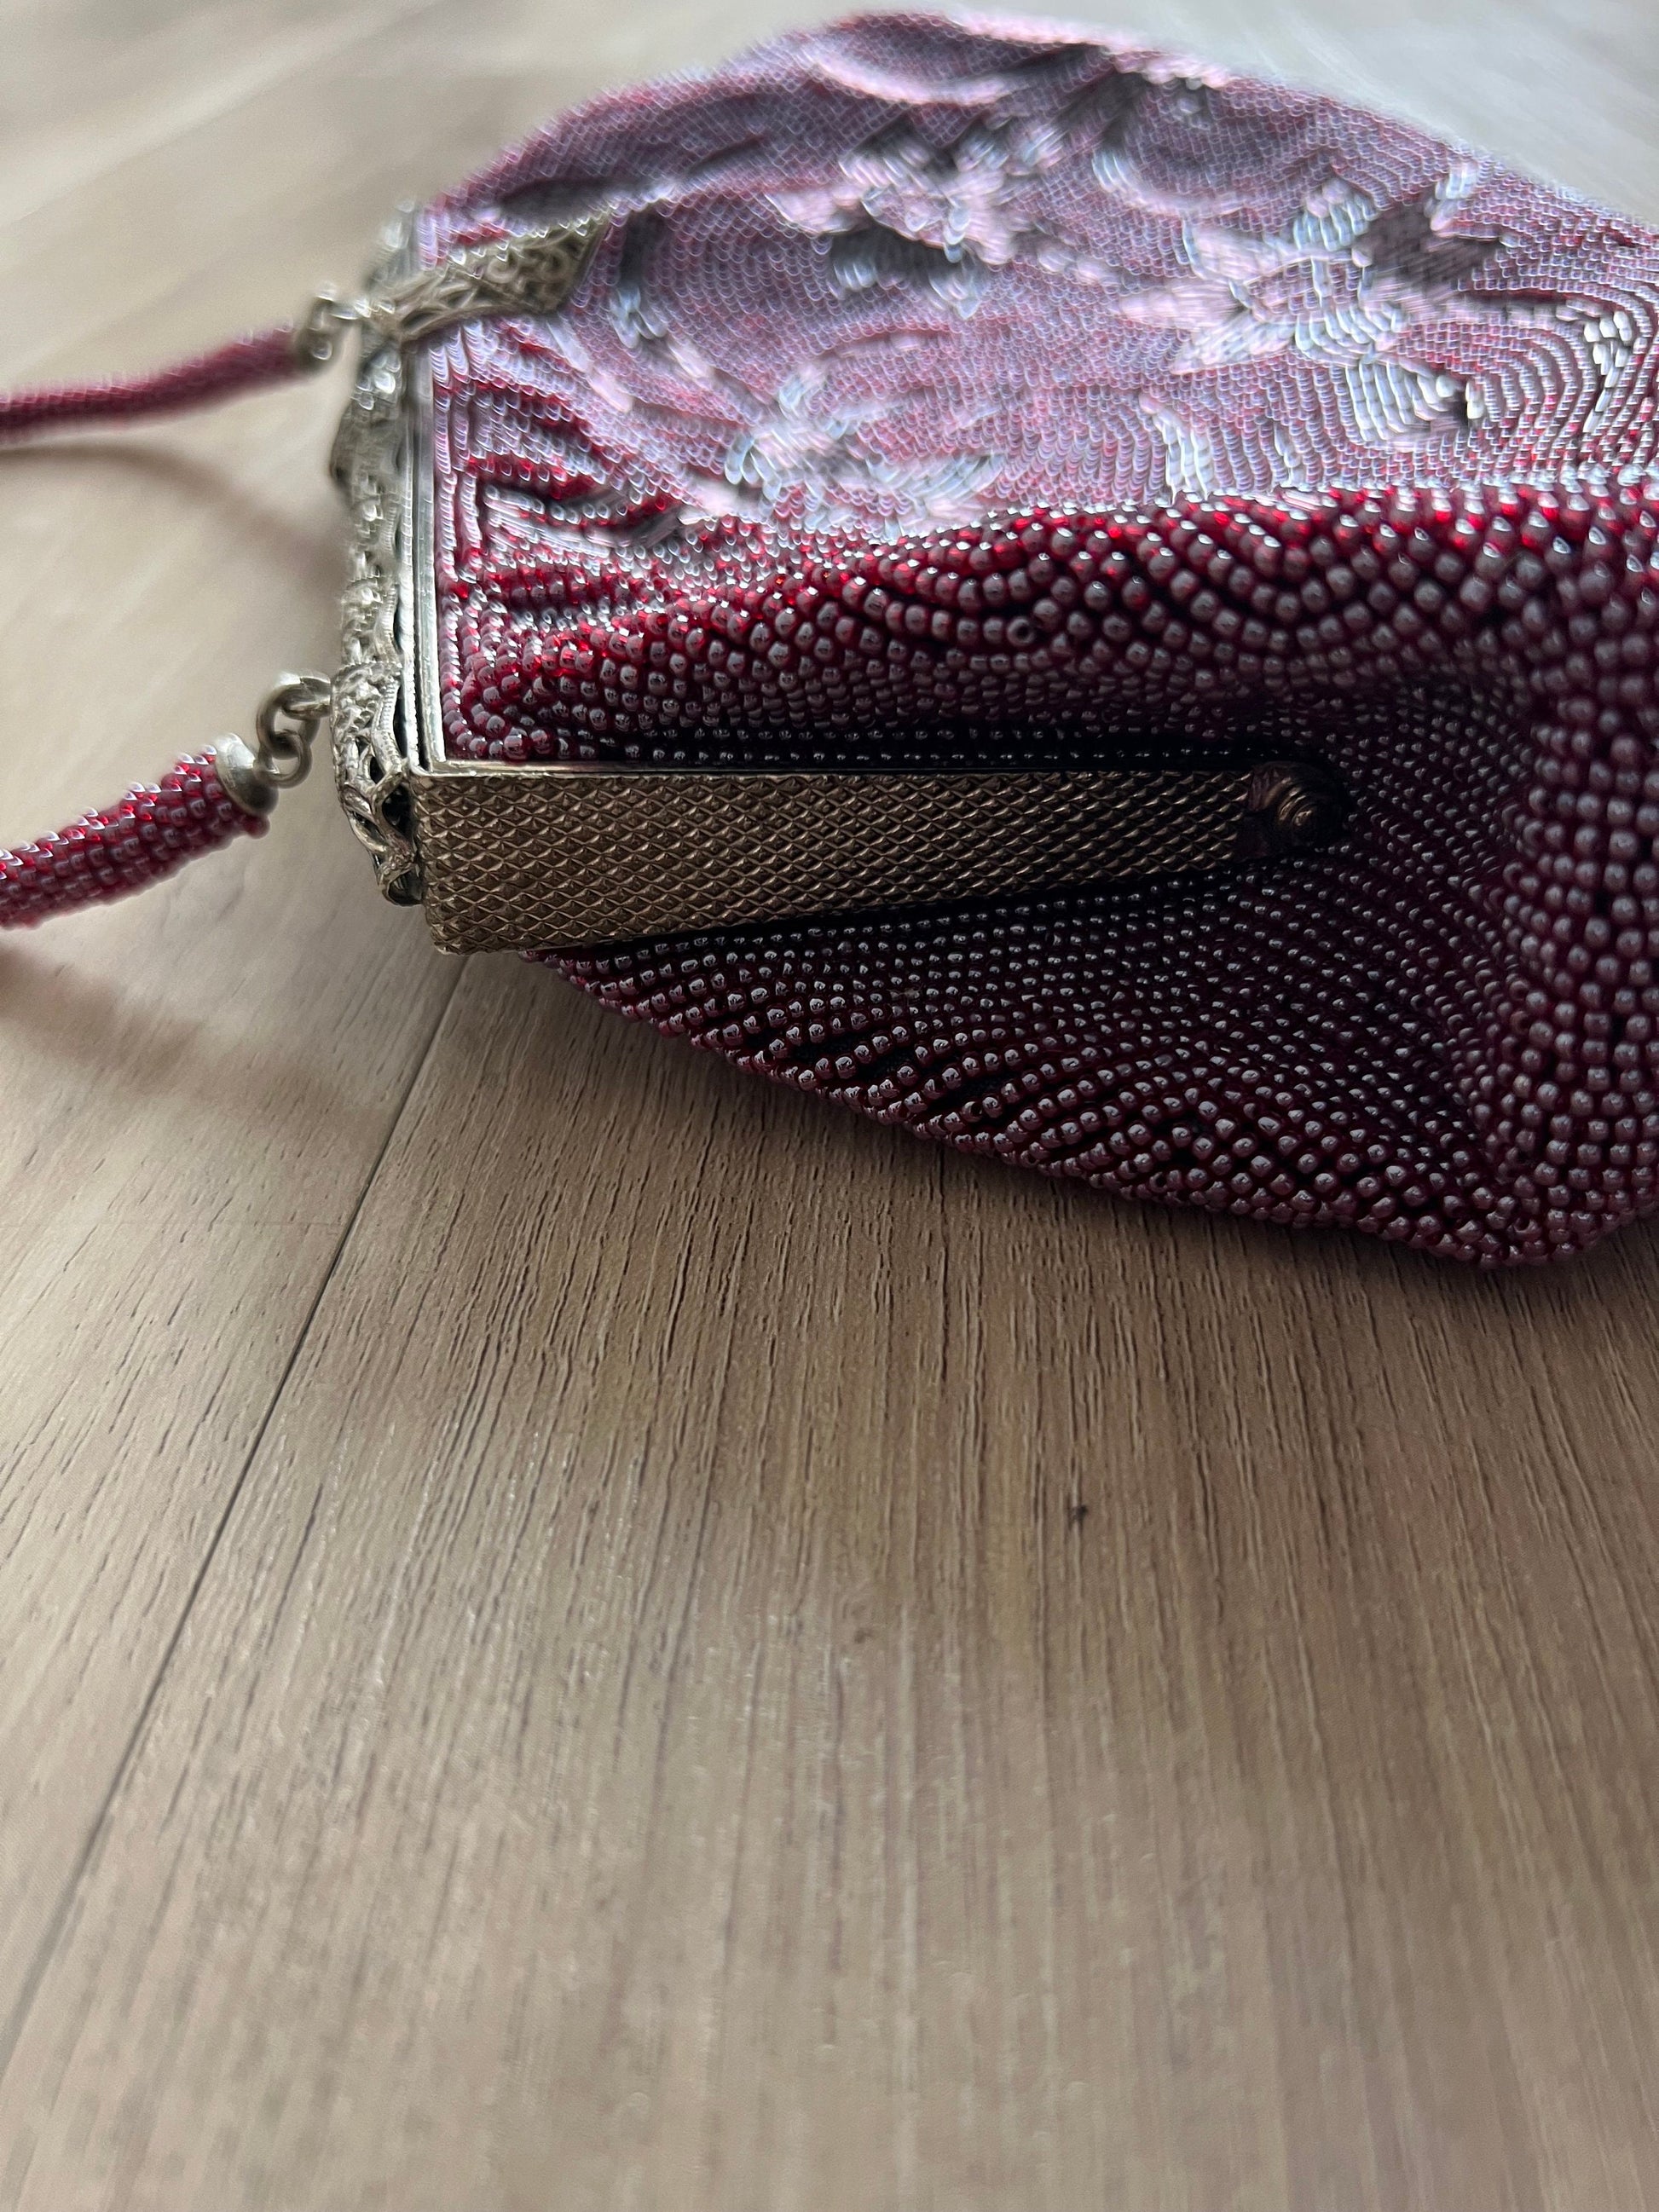 Vintage Japanese Purple Beaded Bag